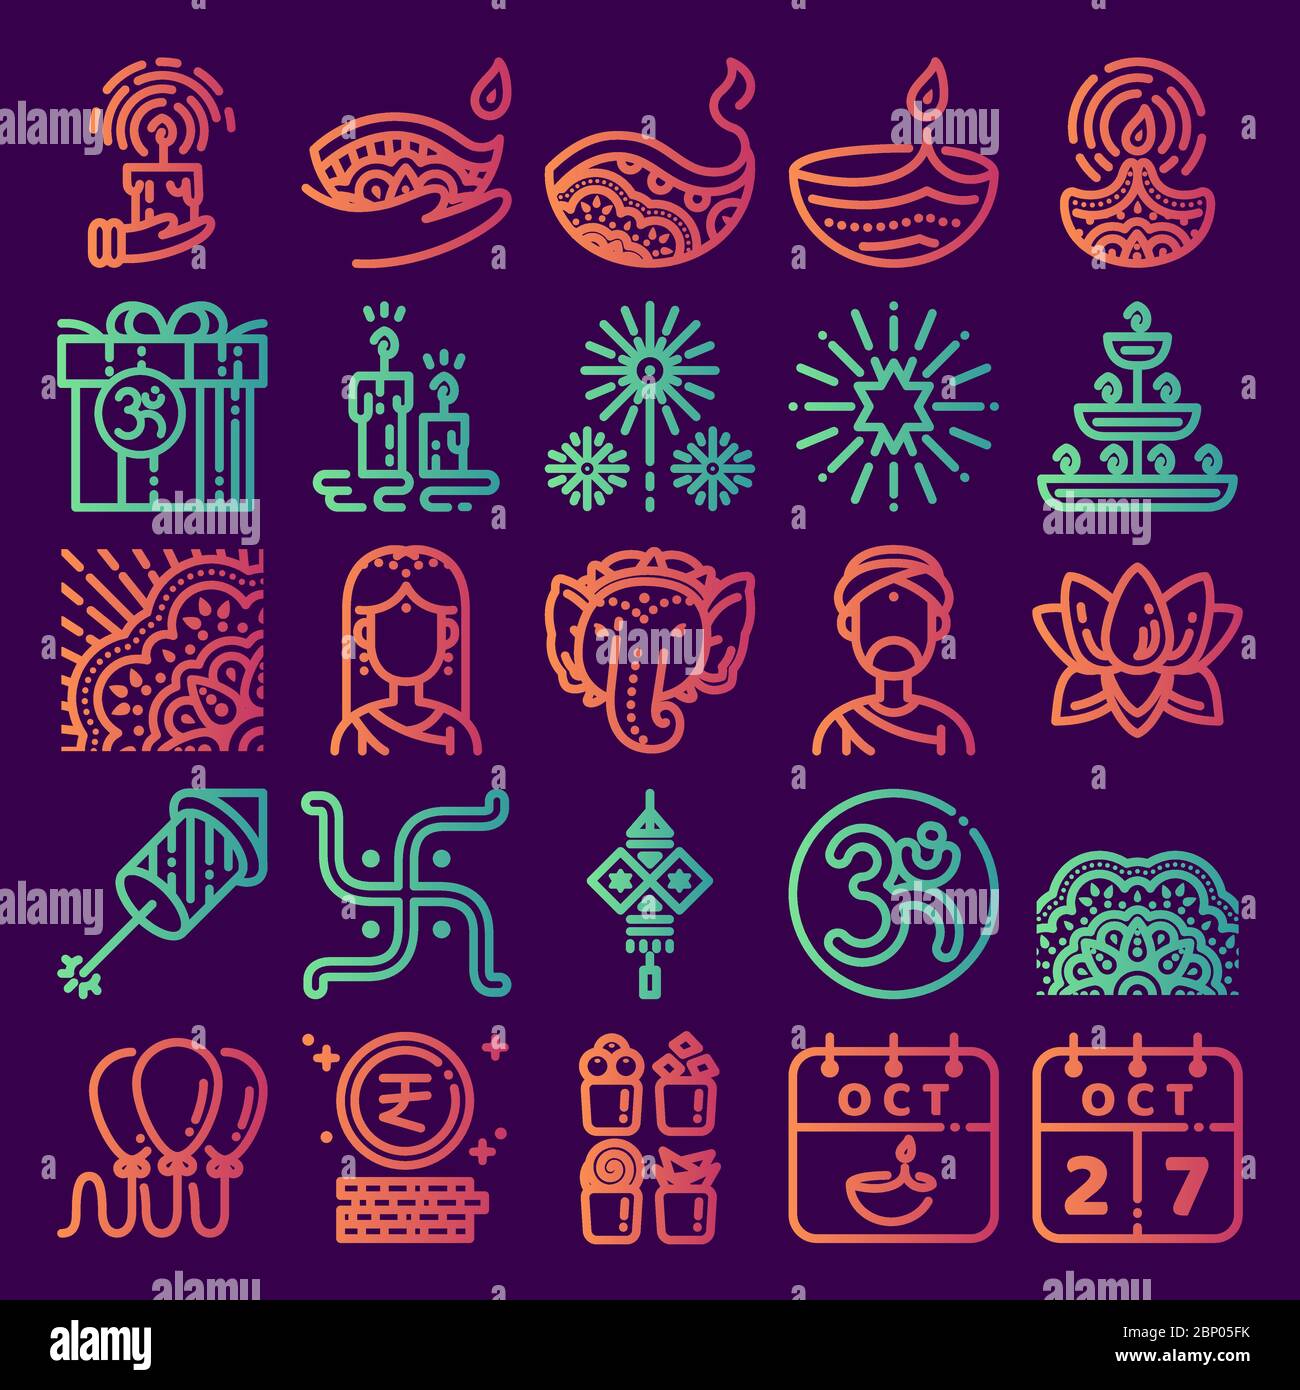 Diwali Symbol gesetzt. Linie Kunst Ikone für Deepavali Festival feiern, hinduismus, Indien, Hindu. Design von Symbolen mit 48 Pixeln. Farbverlauf. Stock Vektor